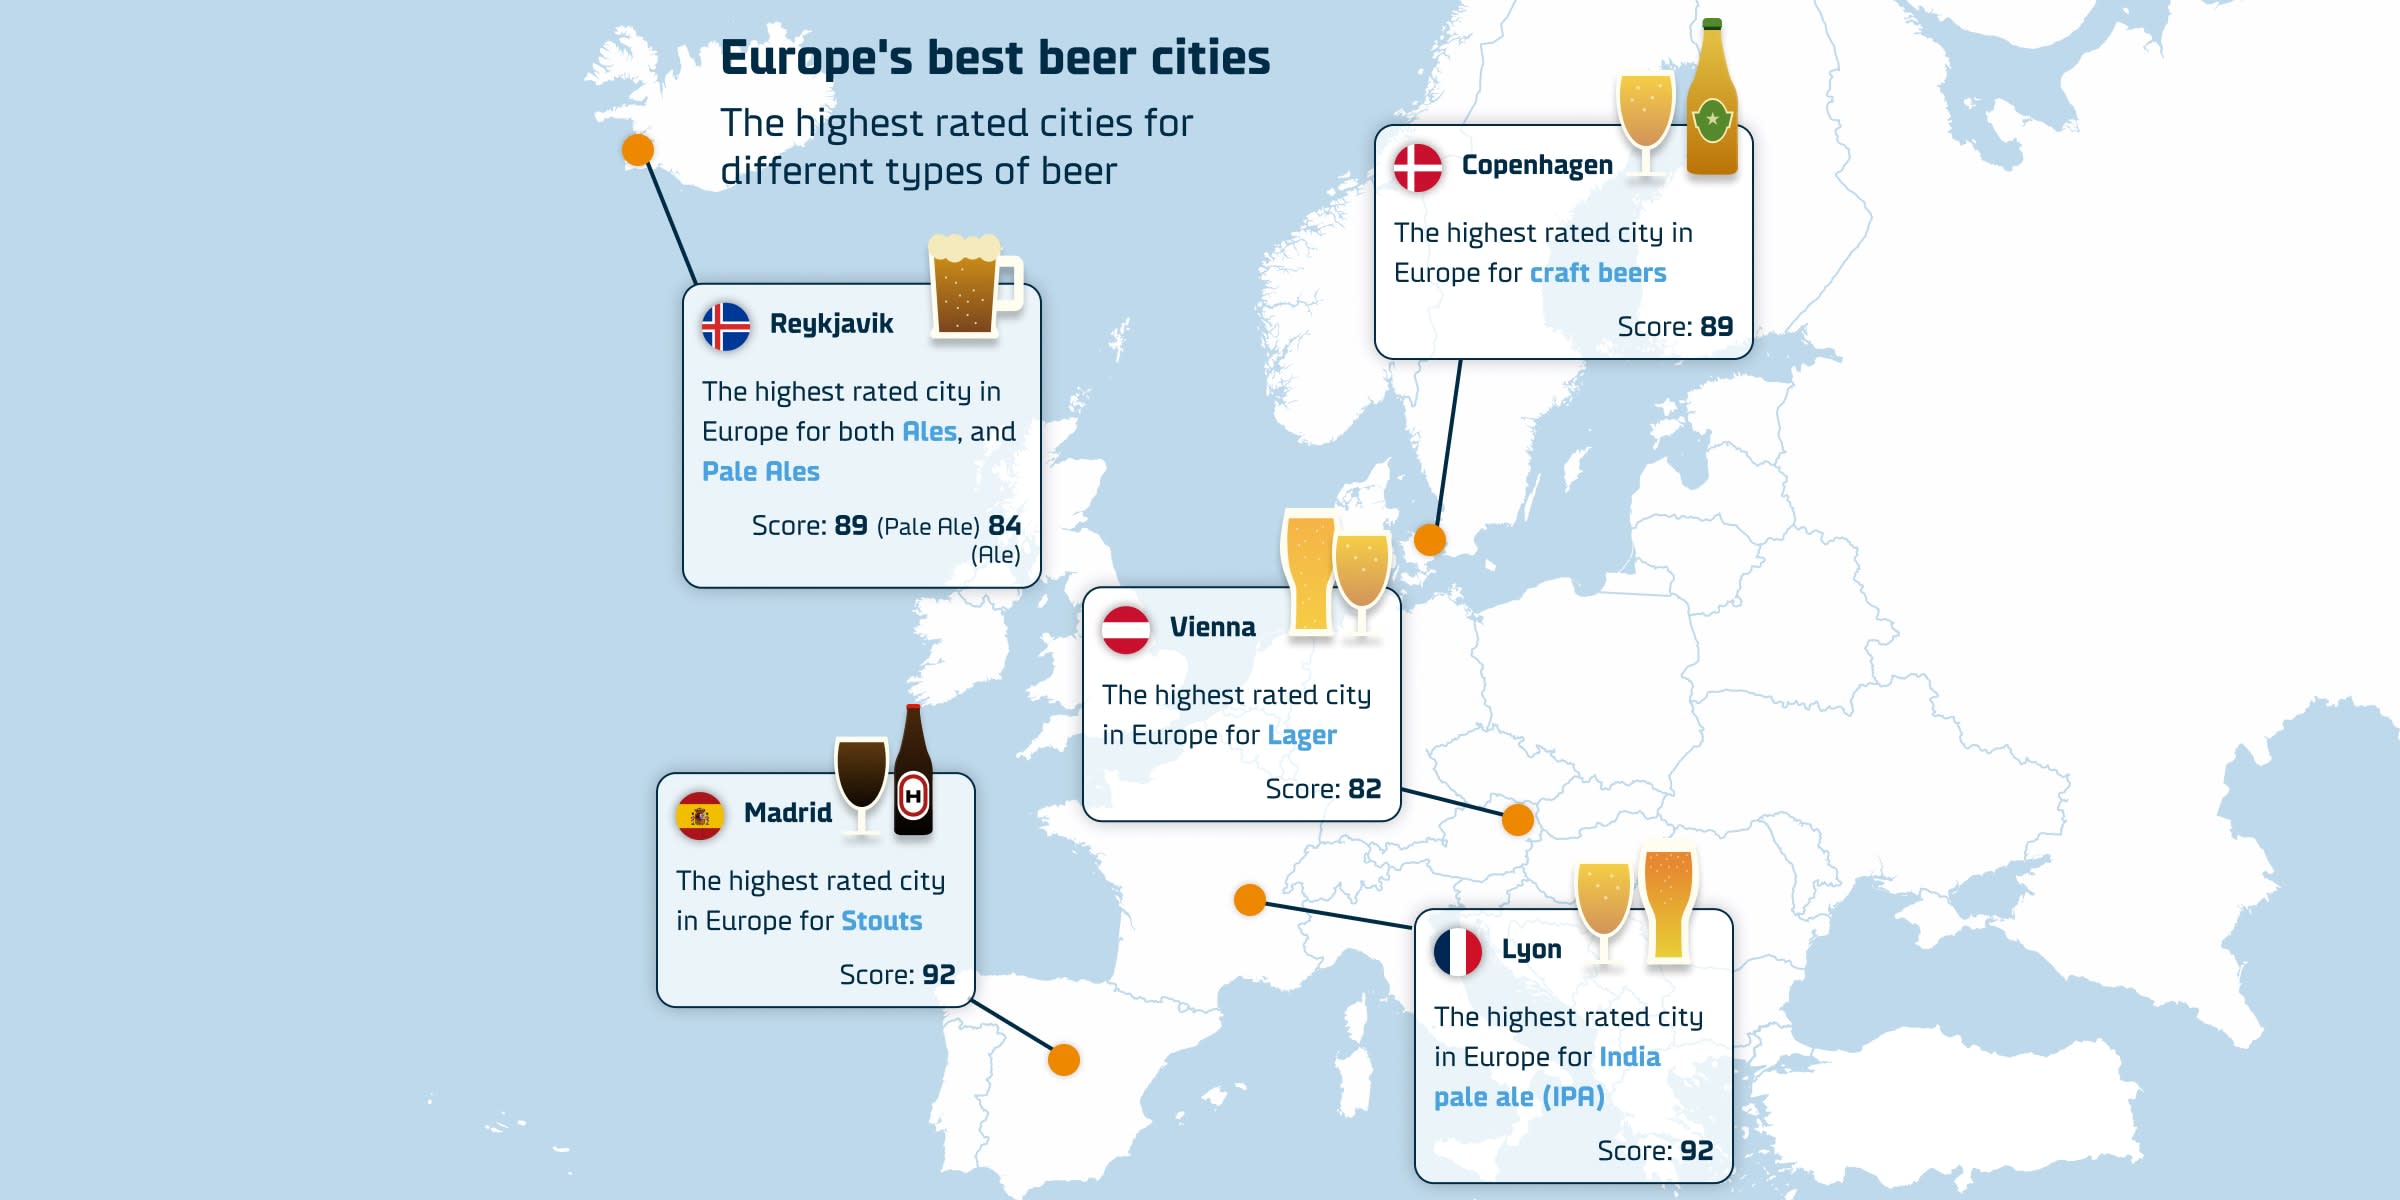 Europe’s best beer cities - Copenhagen